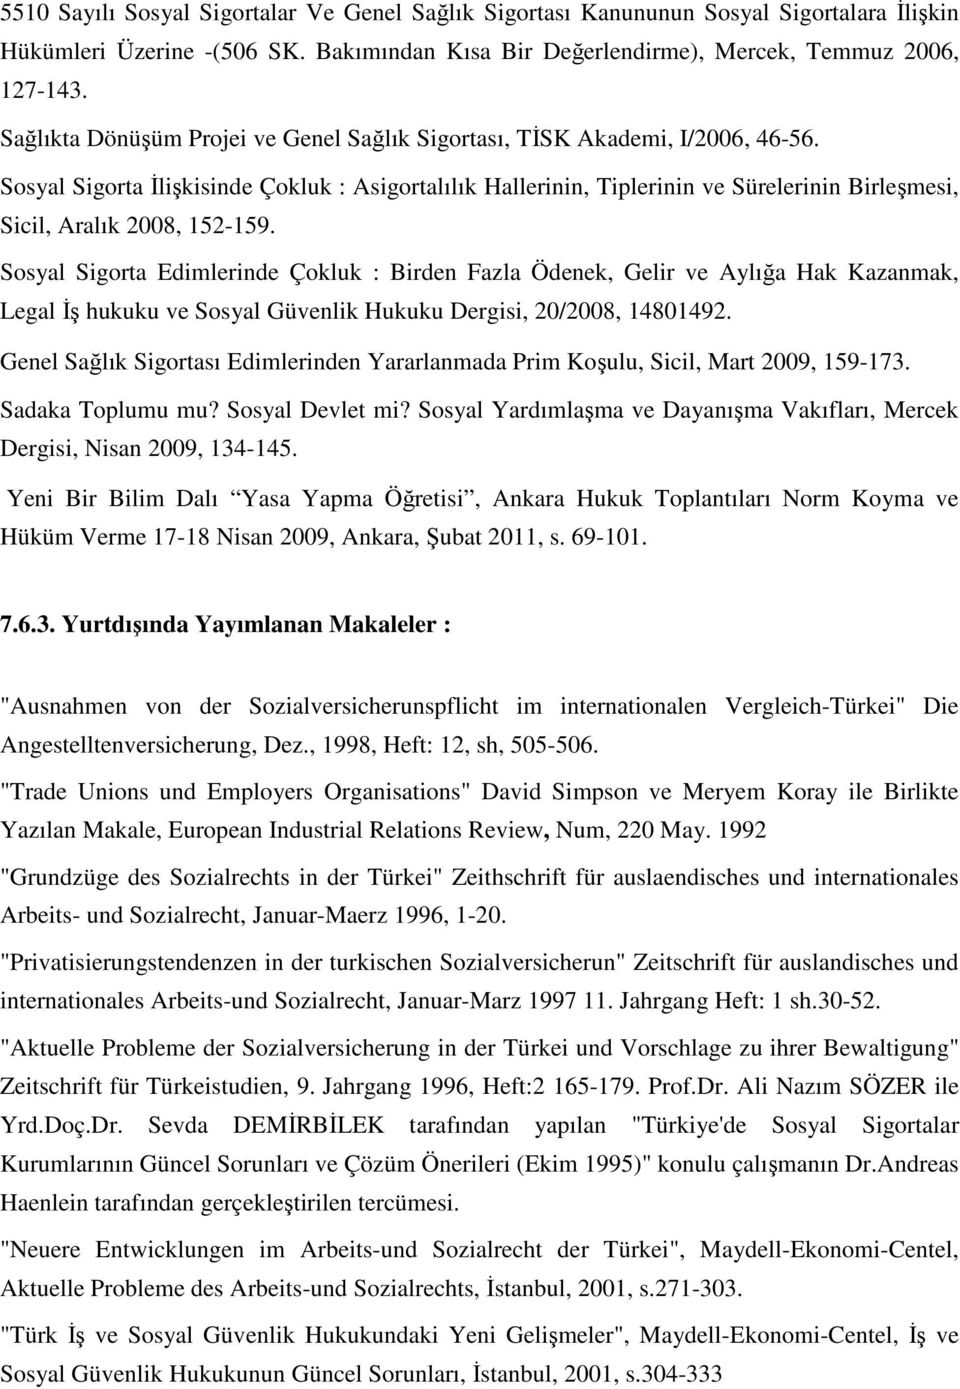 Sosyal Sigorta Đlişkisinde Çokluk : Asigortalılık Hallerinin, Tiplerinin ve Sürelerinin Birleşmesi, Sicil, Aralık 2008, 152-159.